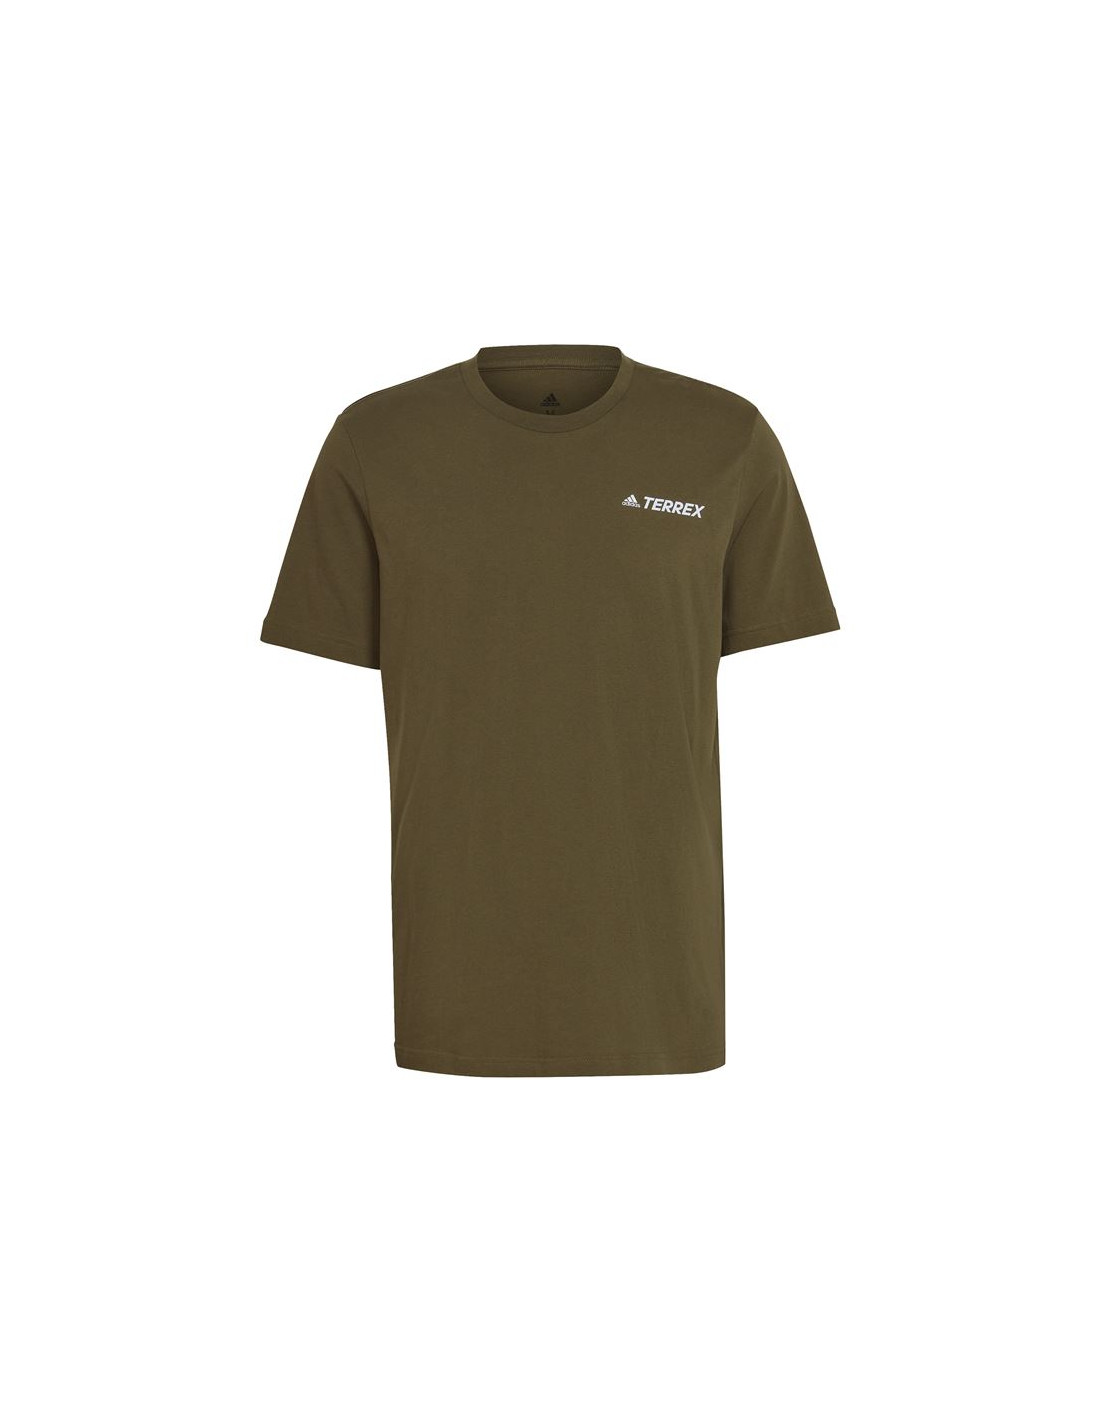 Camiseta de senderismo adidas terrex mountain graphic focus olive